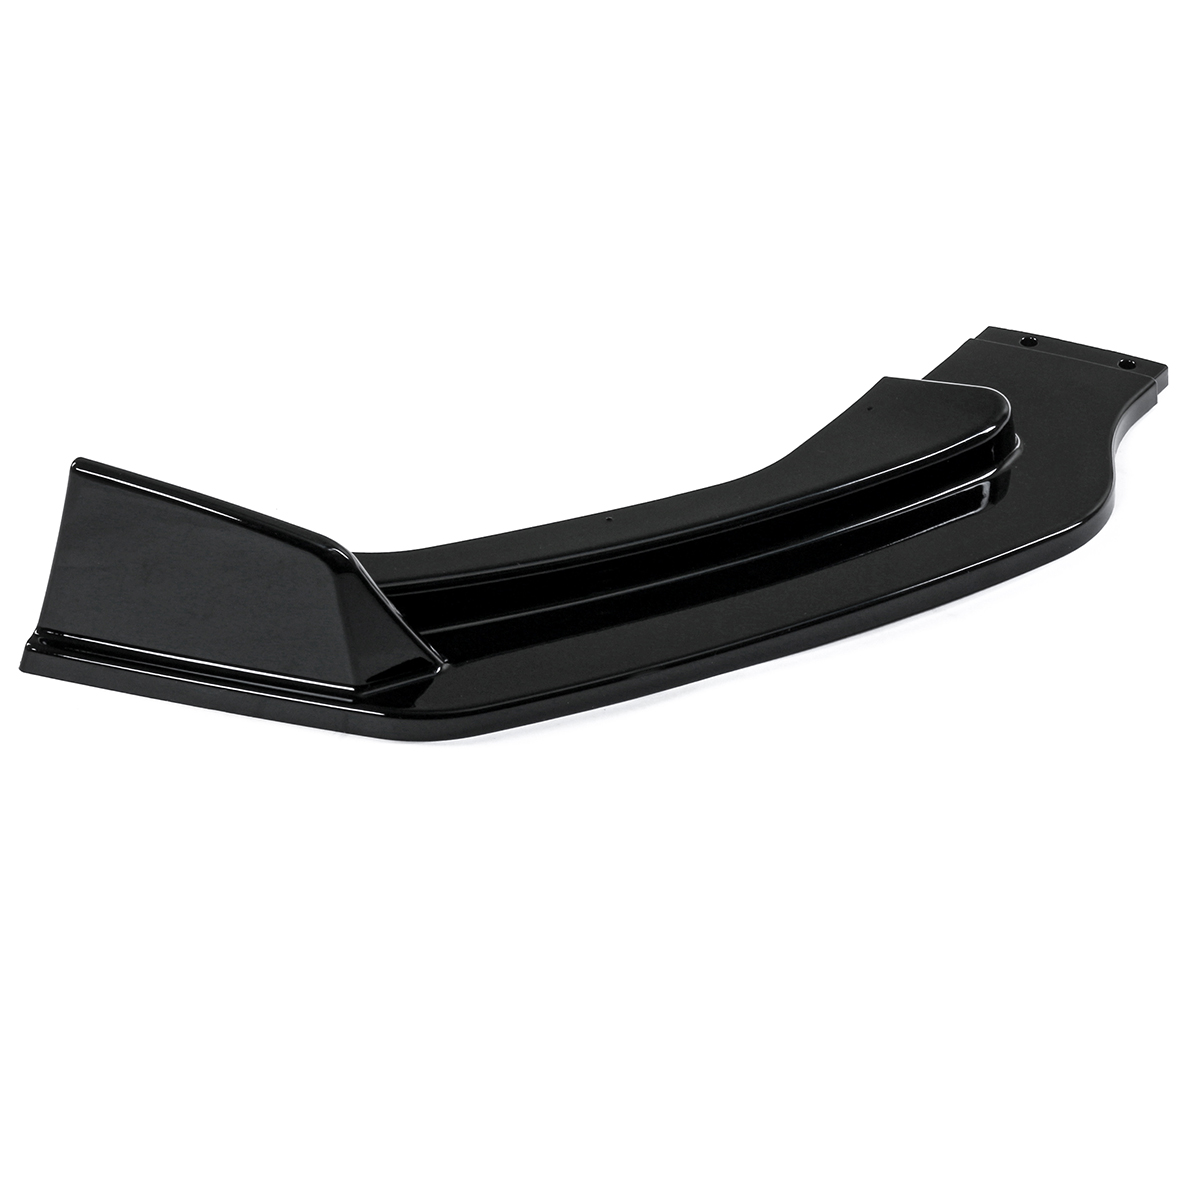 3 Pcs/Set Glossy Black Front Bumper Canard Chin Lip Spoiler Spliters for Infiniti Q50 Q50S Q50L 2014-2017